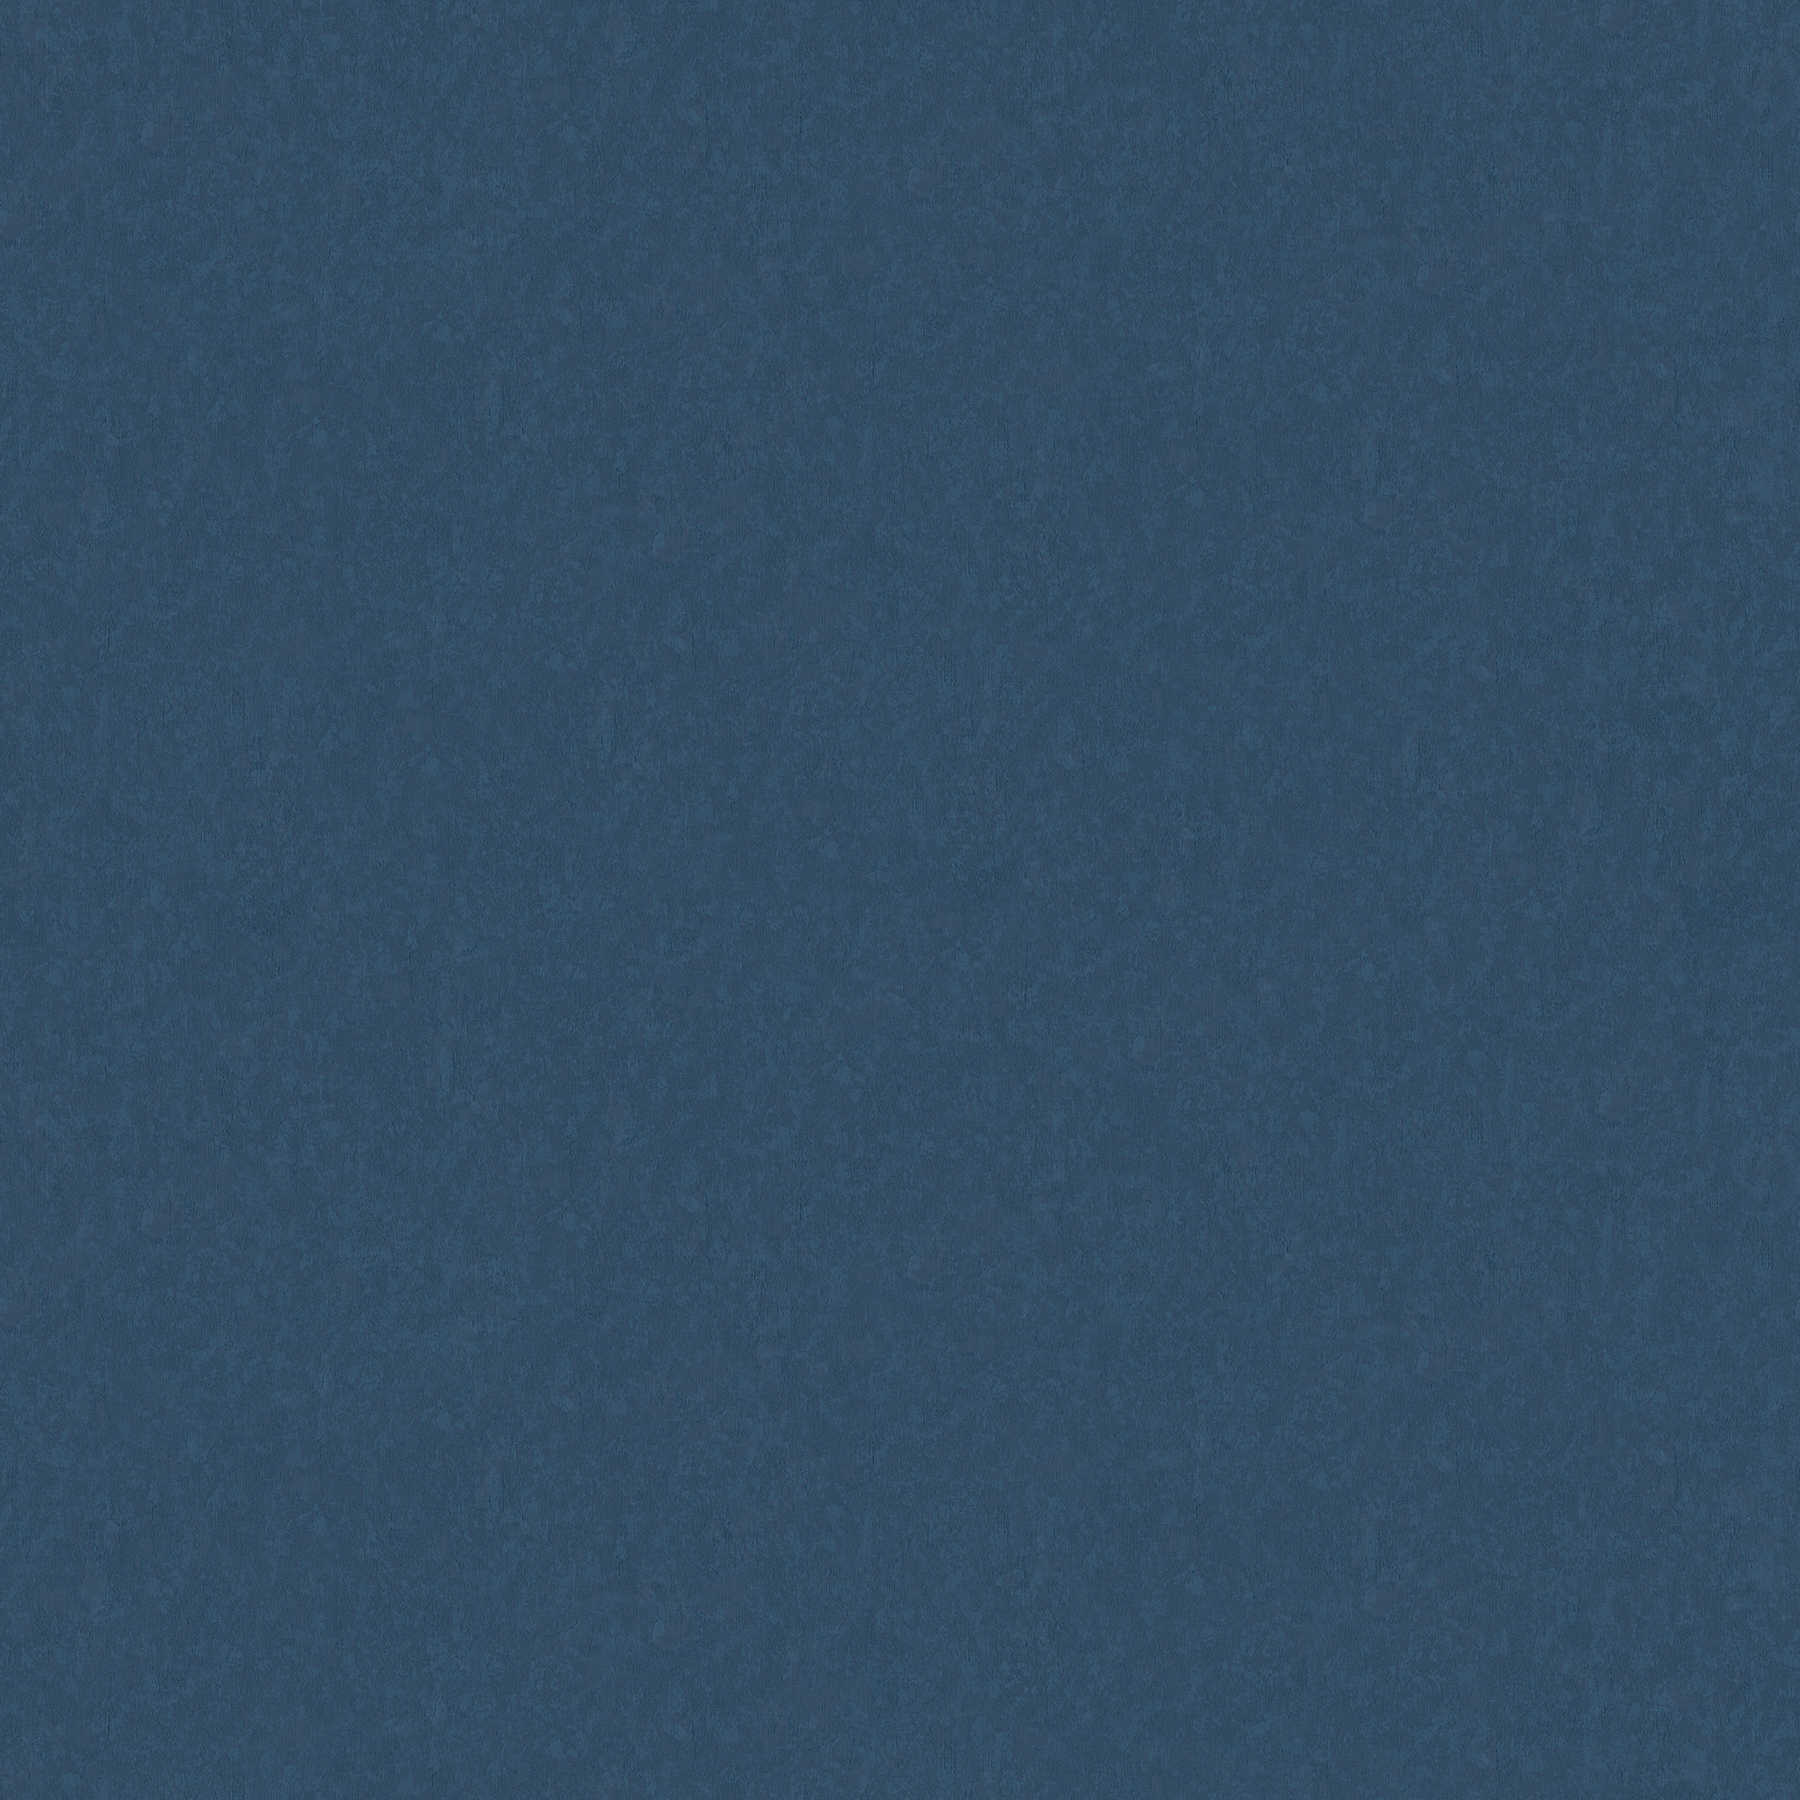         Einfarbige Vliestapete in Premium Qualität – Blau
    